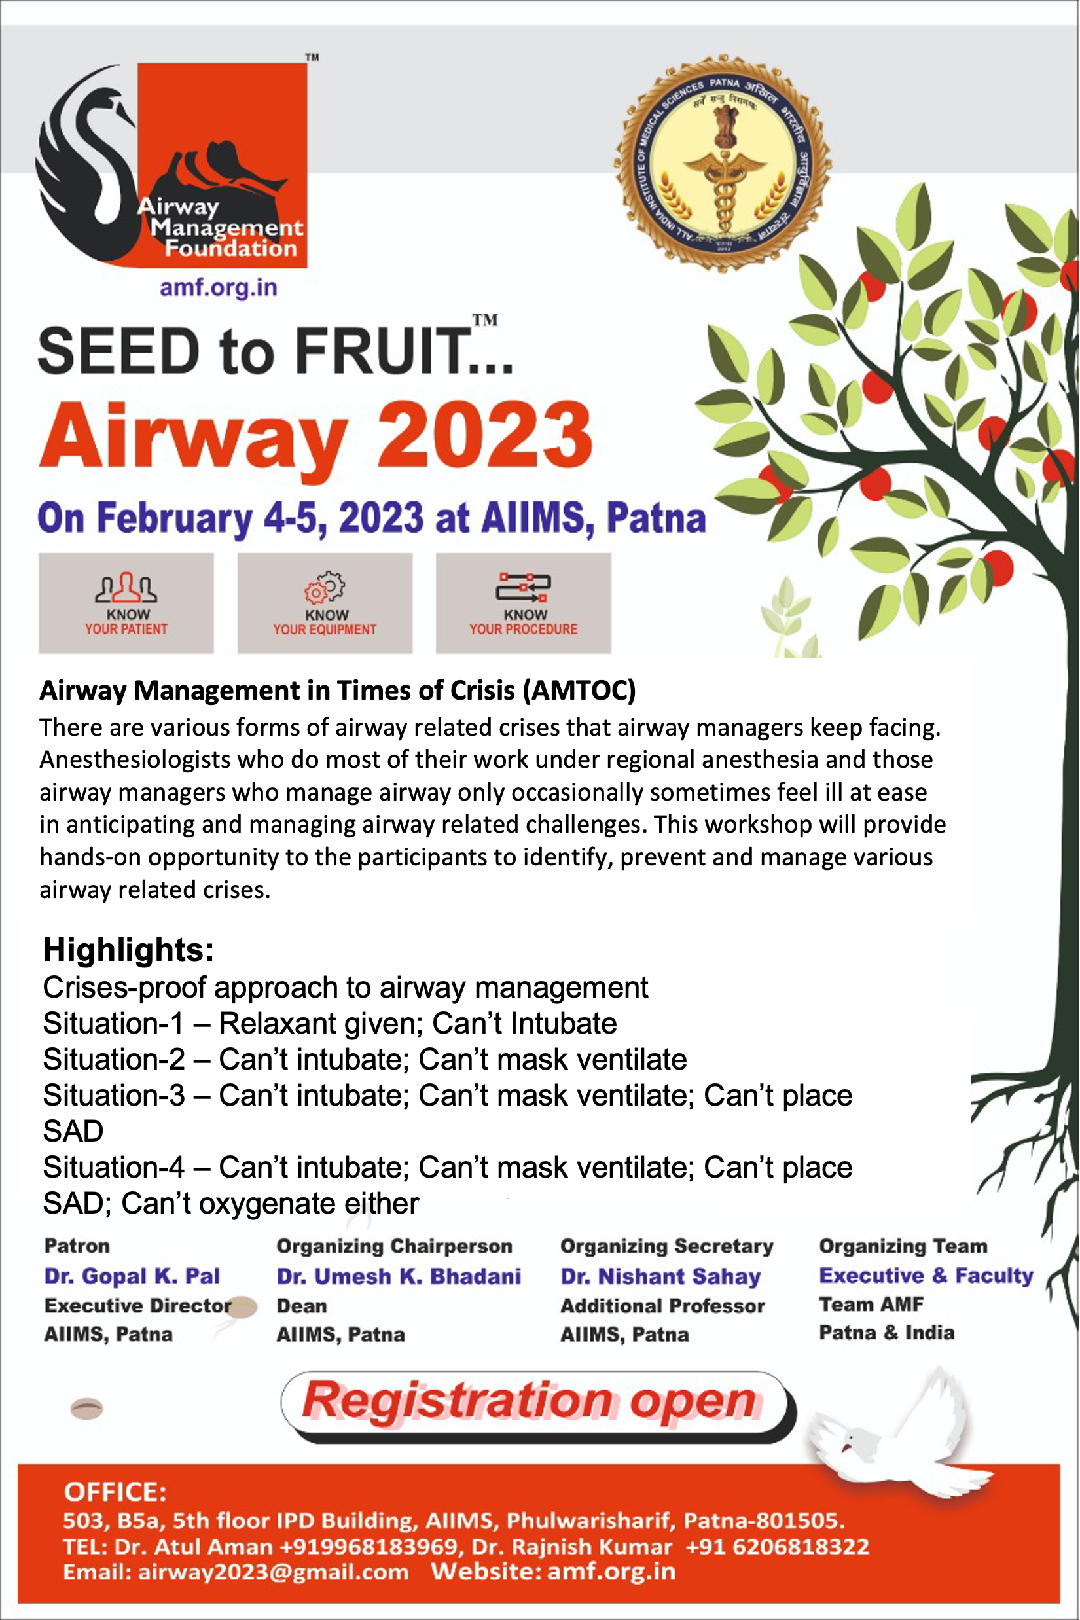 Airway Management Foundation